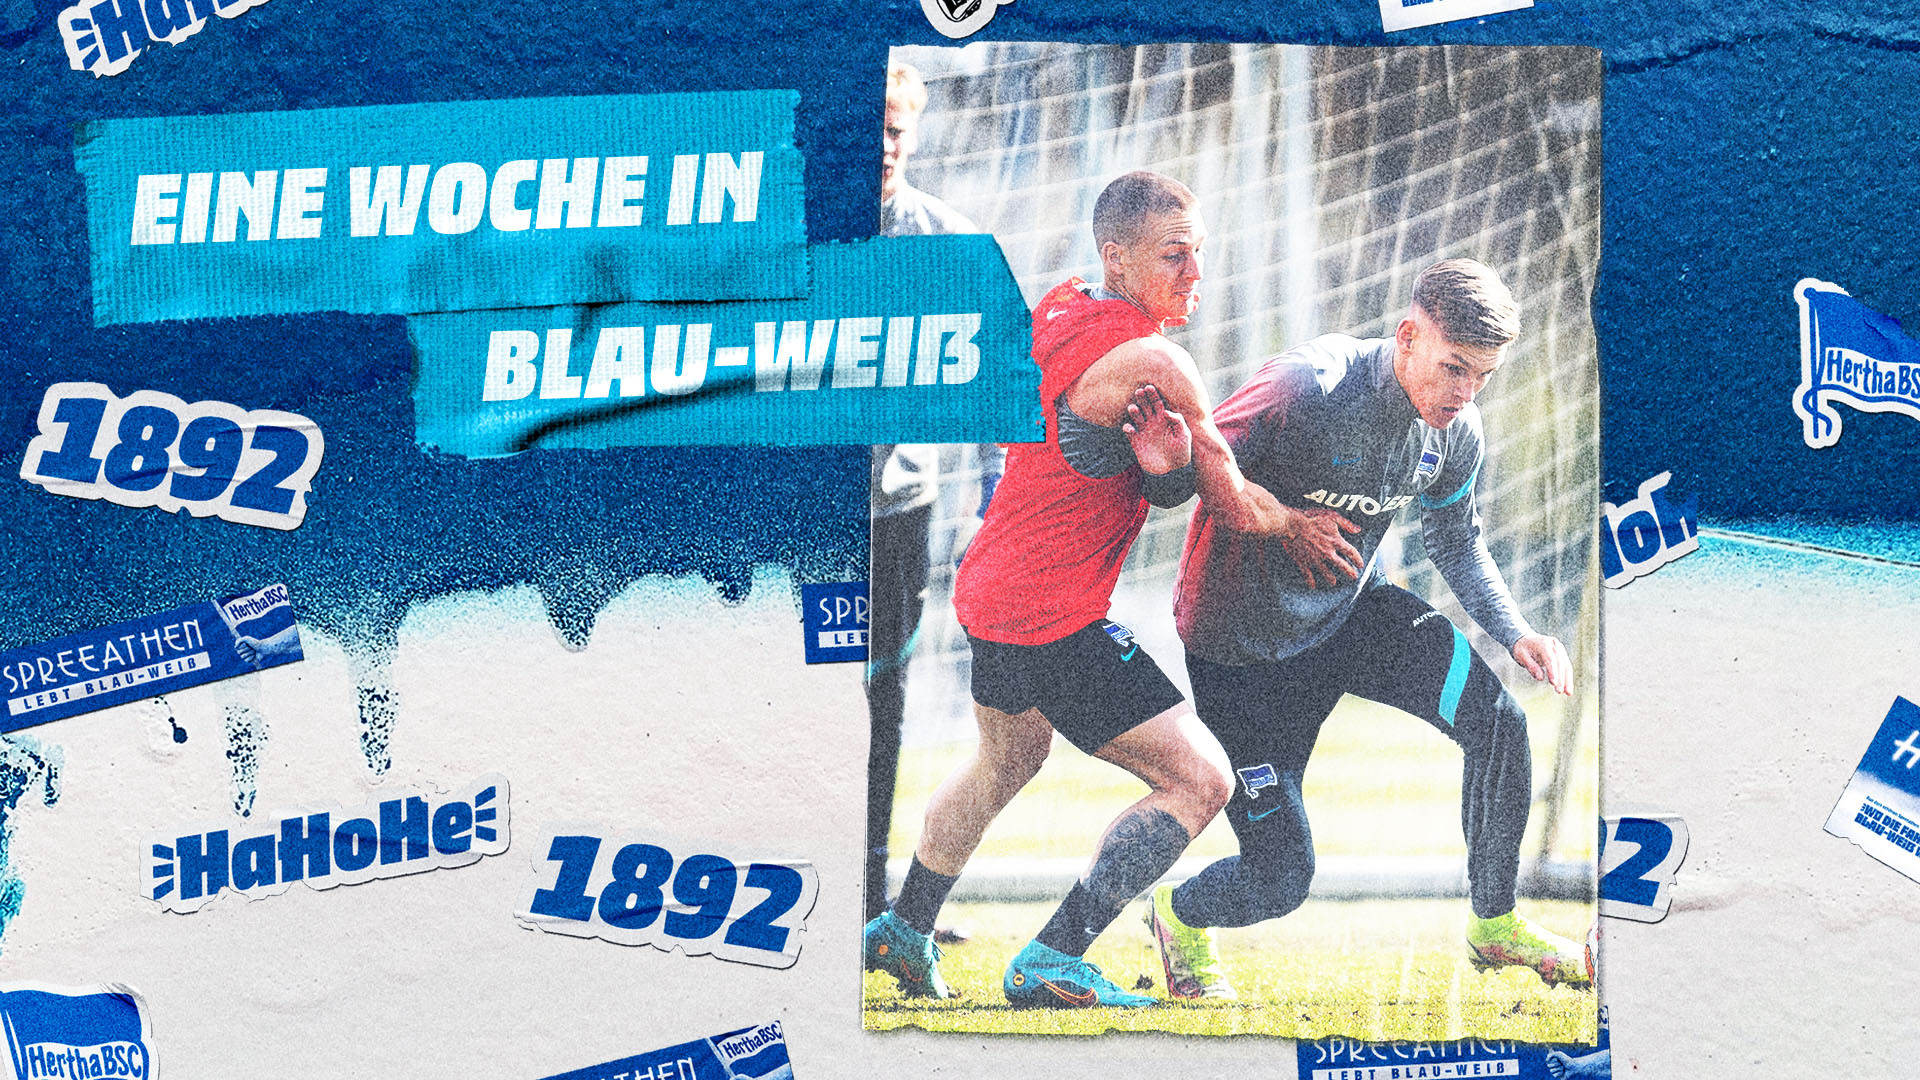 Der Thumb zur Woche in Blau-Weiß vor dem Auswärtsspiel in Augsburg.